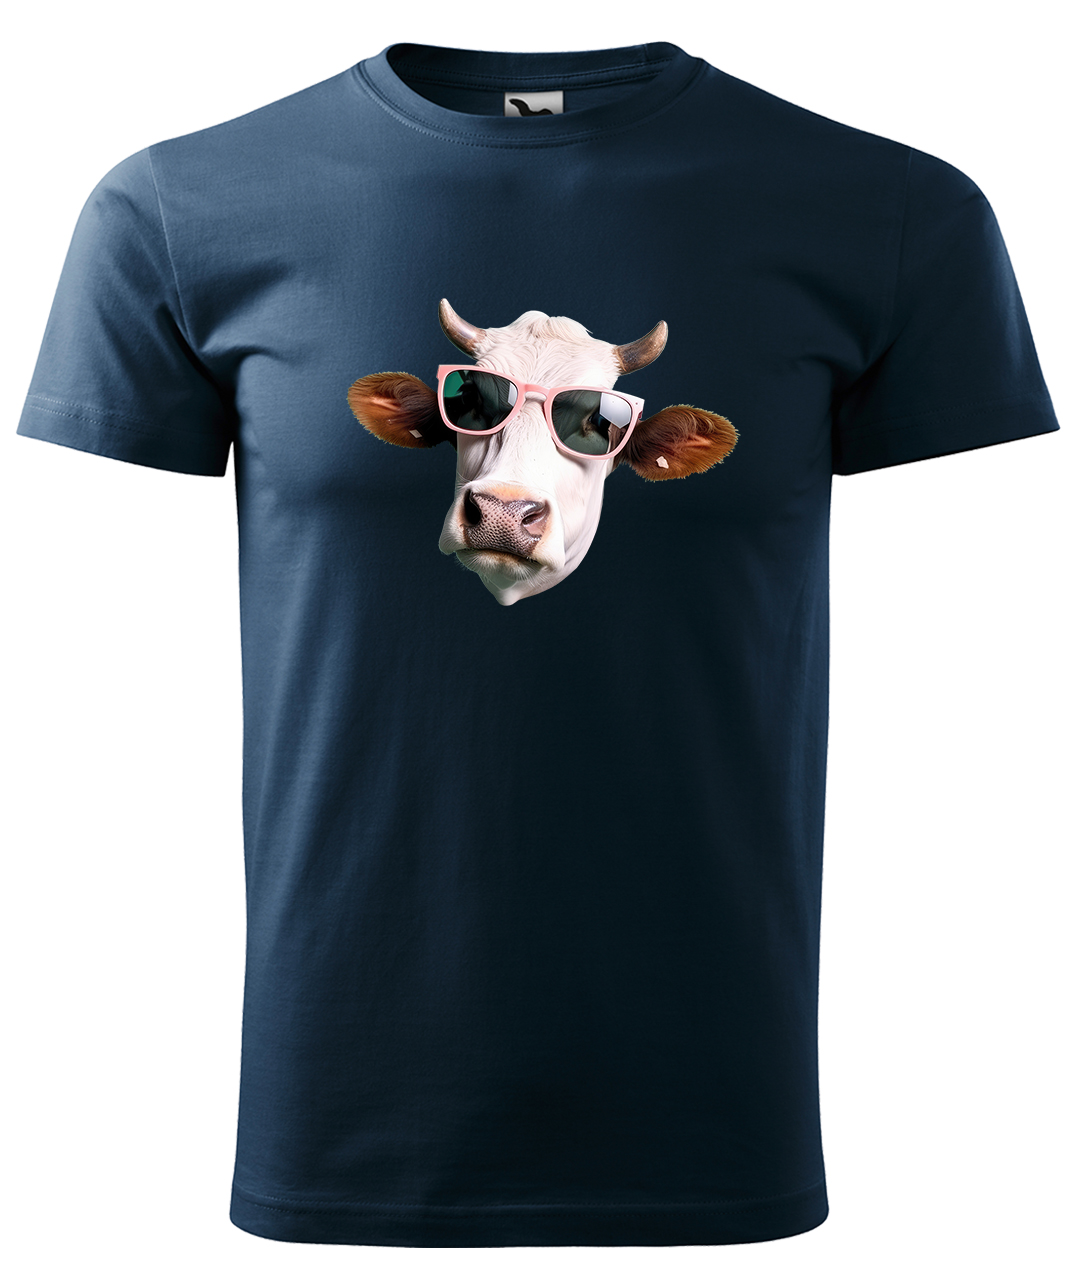 Dětské tričko s krávou - Kráva v brýlích Velikost: 10 let / 146 cm, Barva: Námořní modrá (02), Délka rukávu: Krátký rukáv